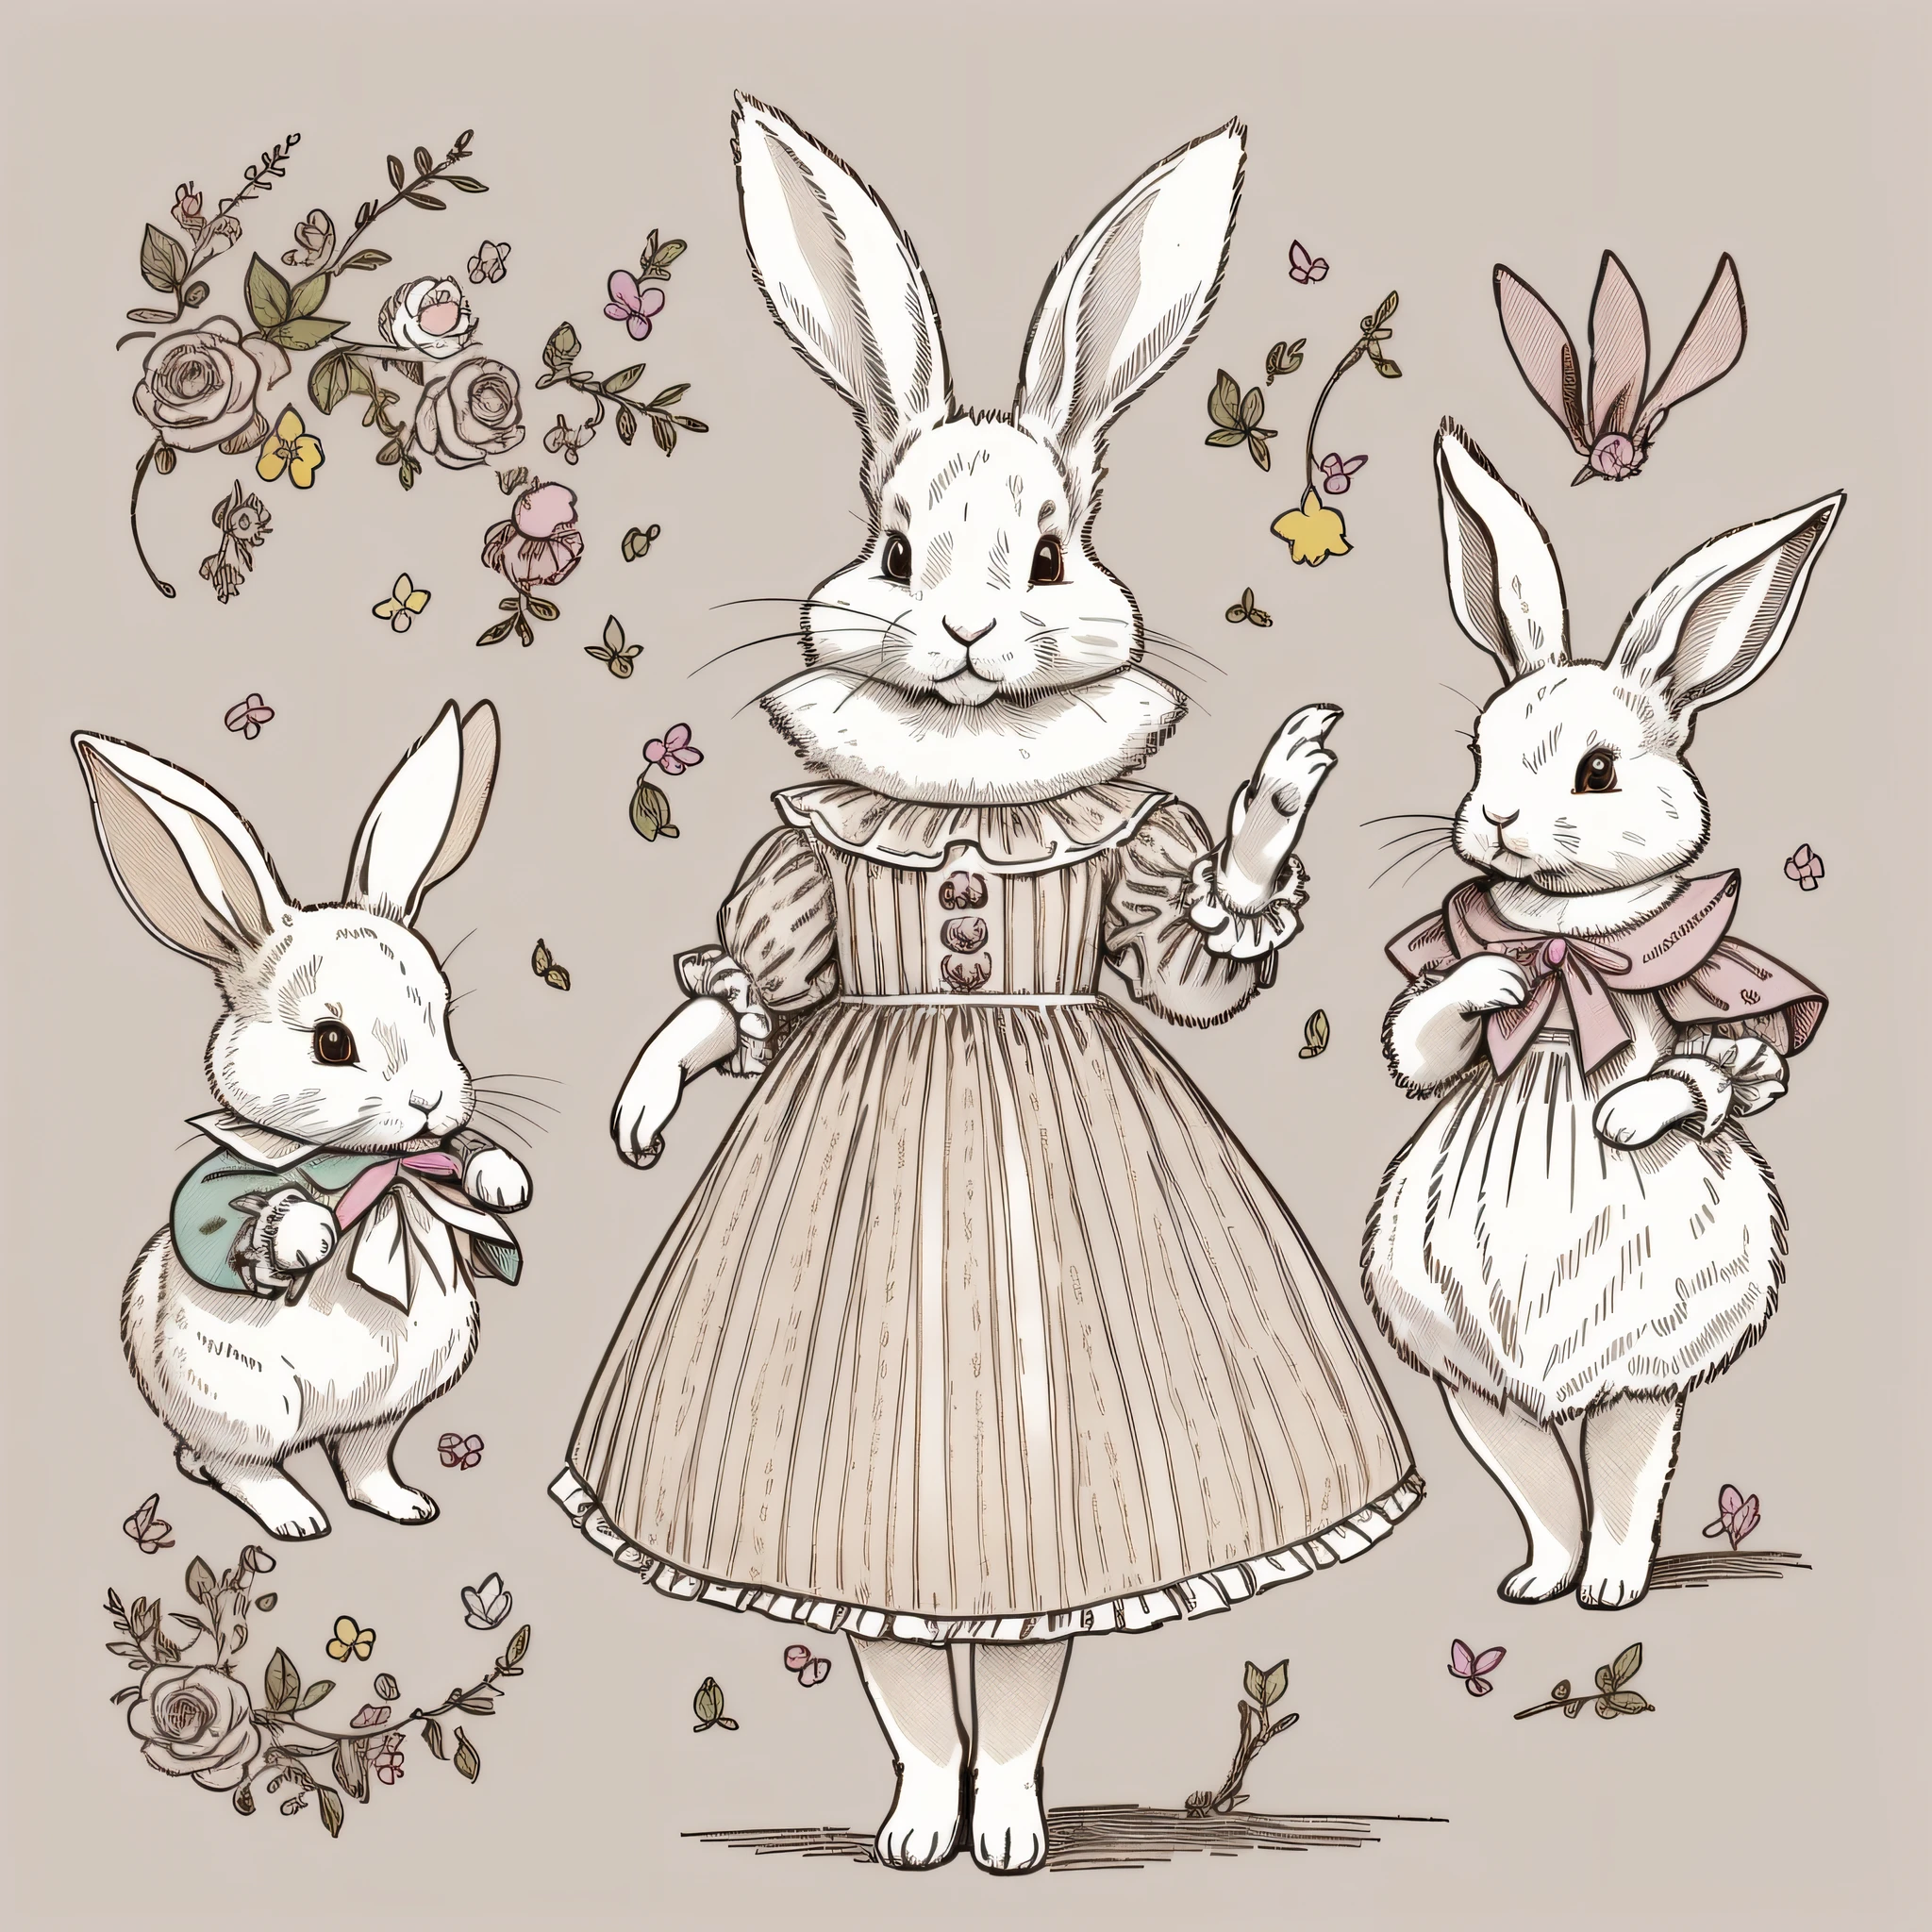 多種姿勢和表情, 兒童繪本繪畫, 穿好衣服的兔子, 白兔子, 雙足的, 兔子擬人化, 三頭, 設定圖, 可愛的, 兩隻兔子耳朵, 彩色插圖, 设定材料, 色彩繽紛, 畸形兔, 18世紀法國服裝,